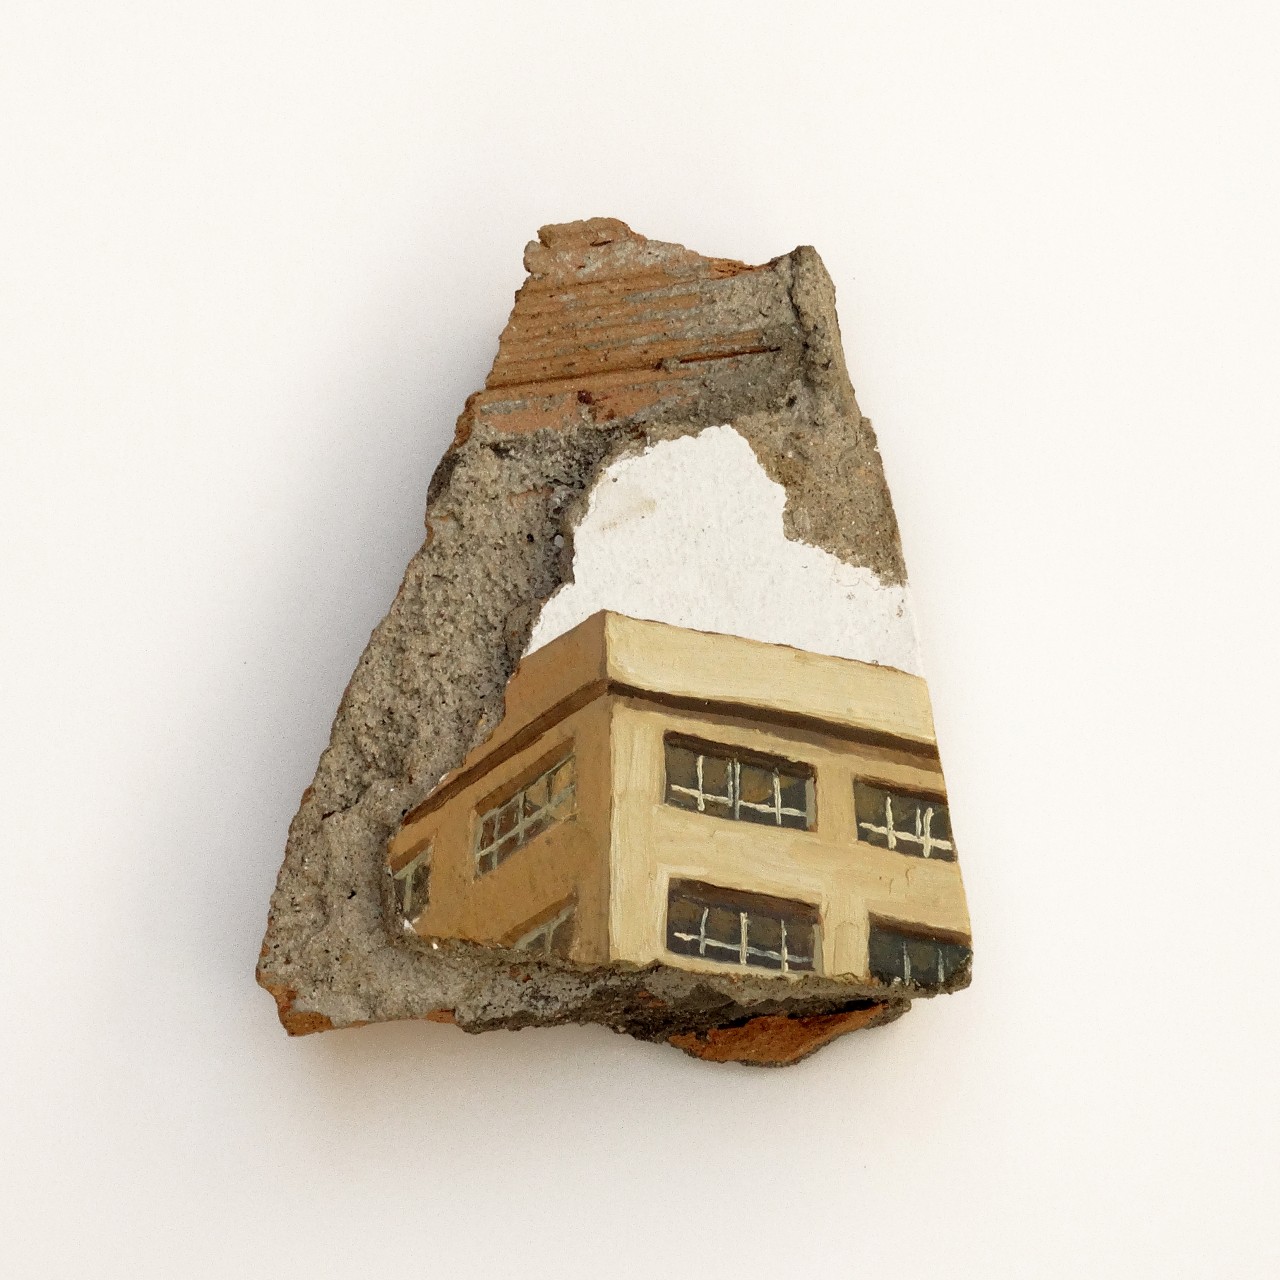 Urzaiz-México. Óleo sobre pintura plástica yeso cemento y ladrillo. 19 x 15.5 cm. Año 2014